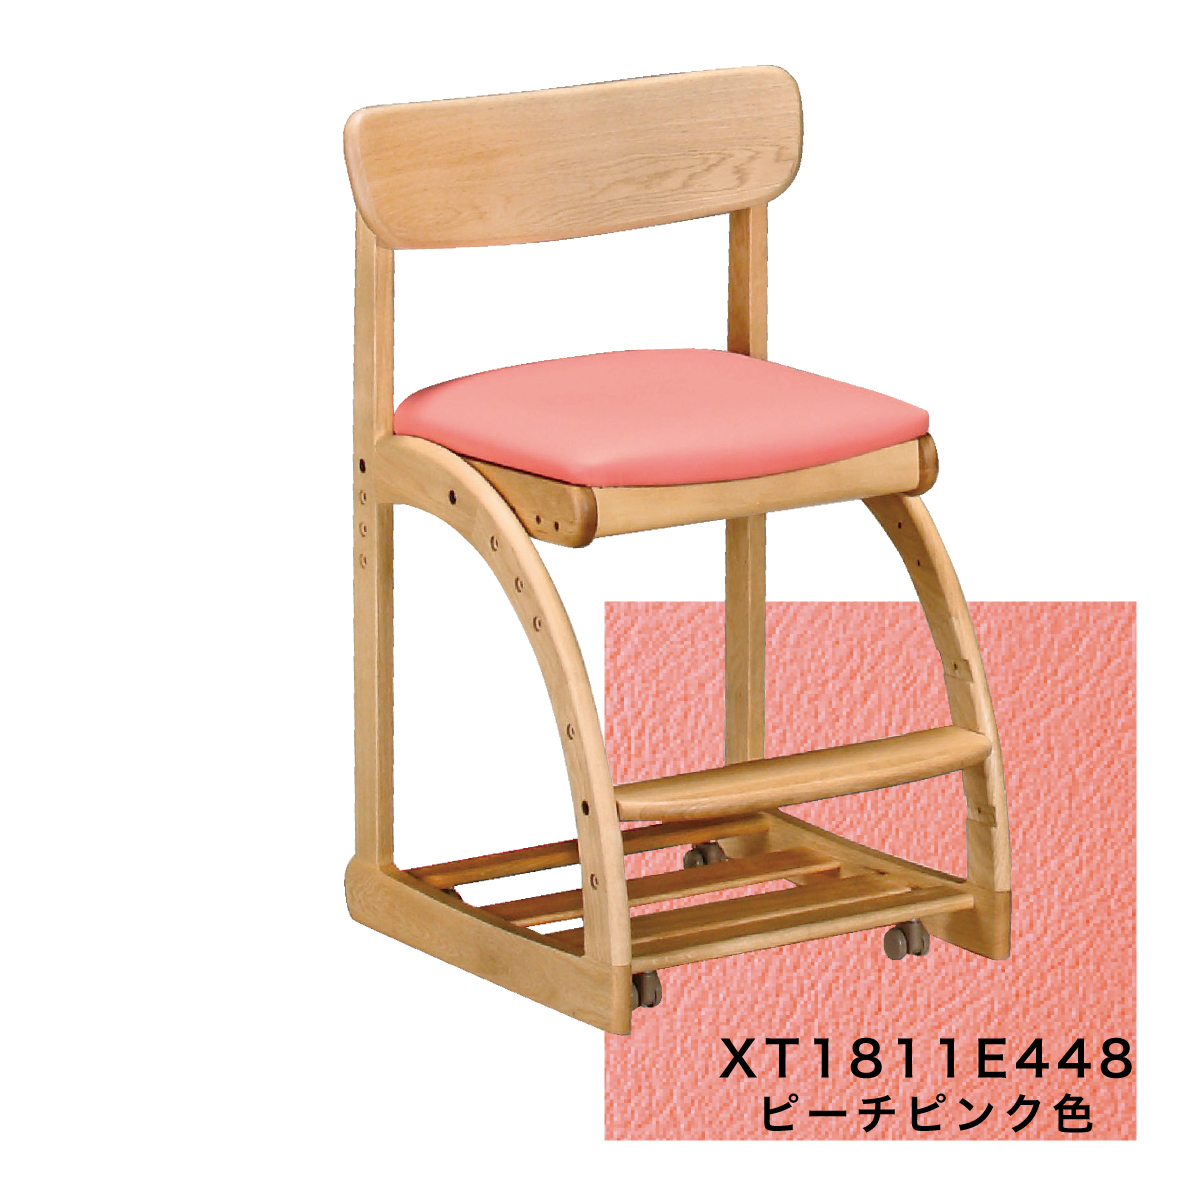 カリモク 学習椅子 木製 XT1811 ピュアオーク色 デスクチェア 学習机 